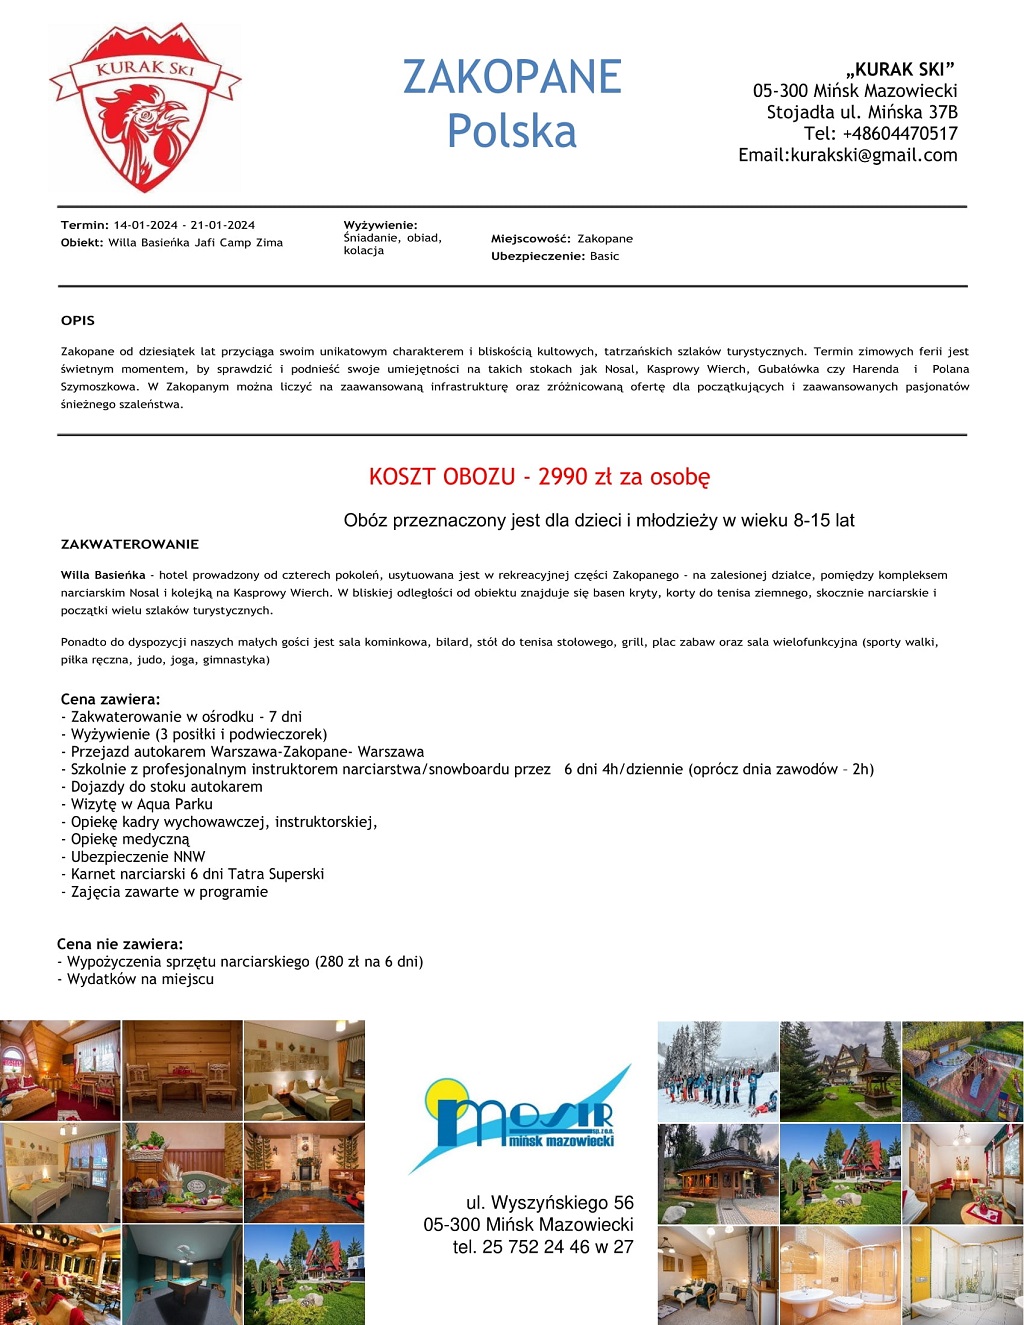 Wycieczka do Włoch 09-16.12.2023 Apartamenty San Marco - Livingo cena za osobę 459 euro